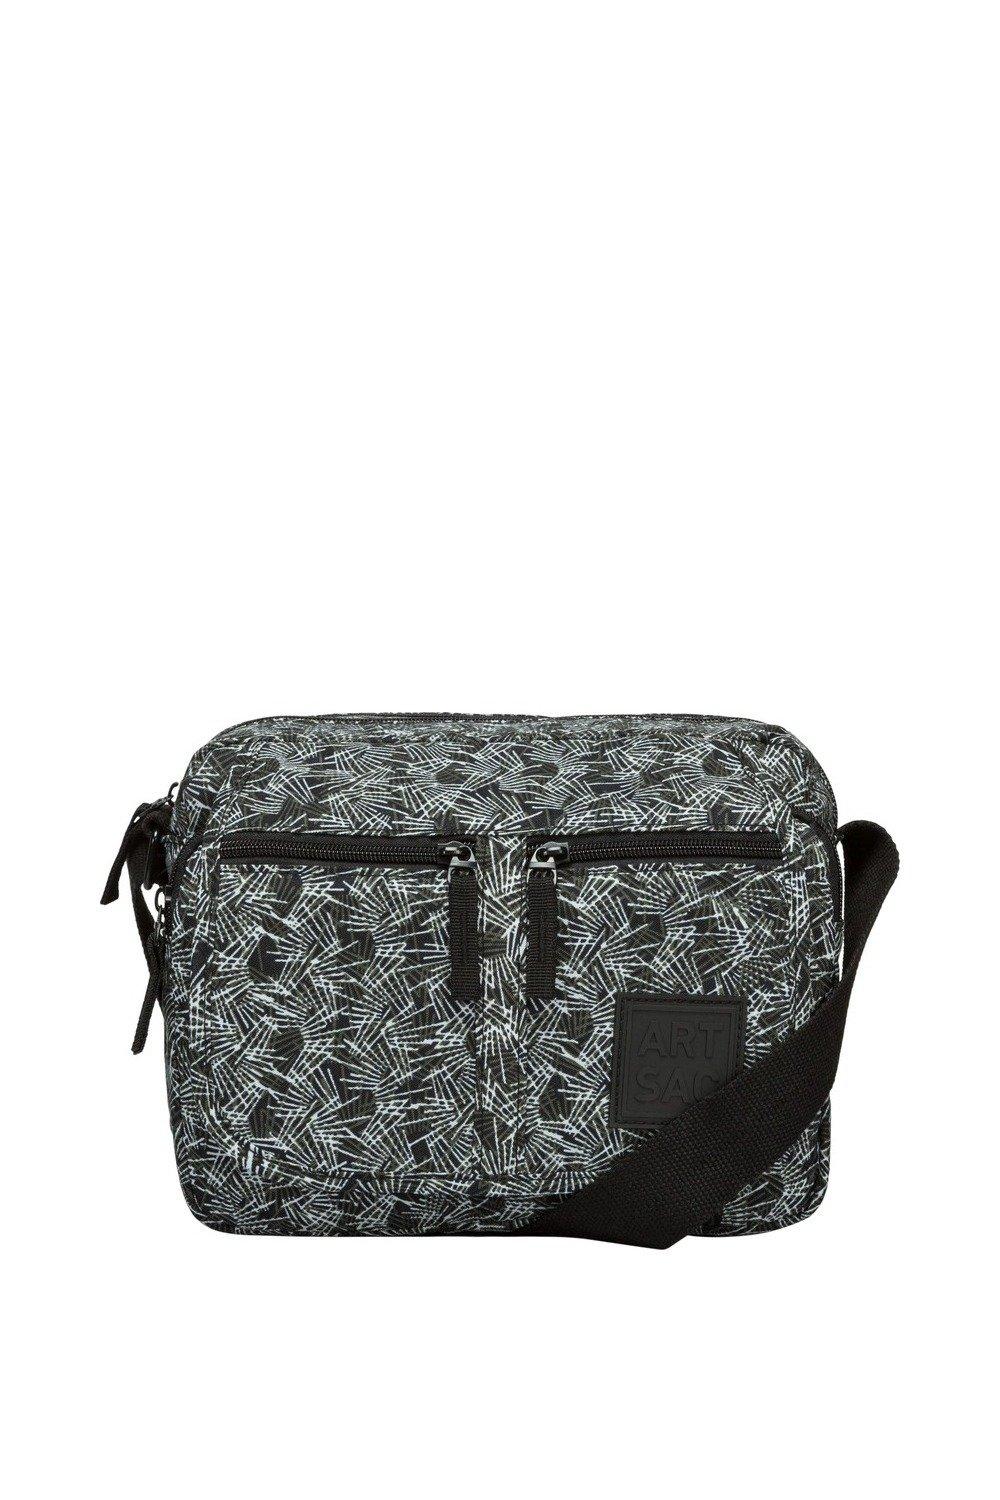 Нейлоновая сумка через плечо с несколькими карманами Artsac, черный наплечная сумка с отделениями для макияжа на молнии с рисунком диснея